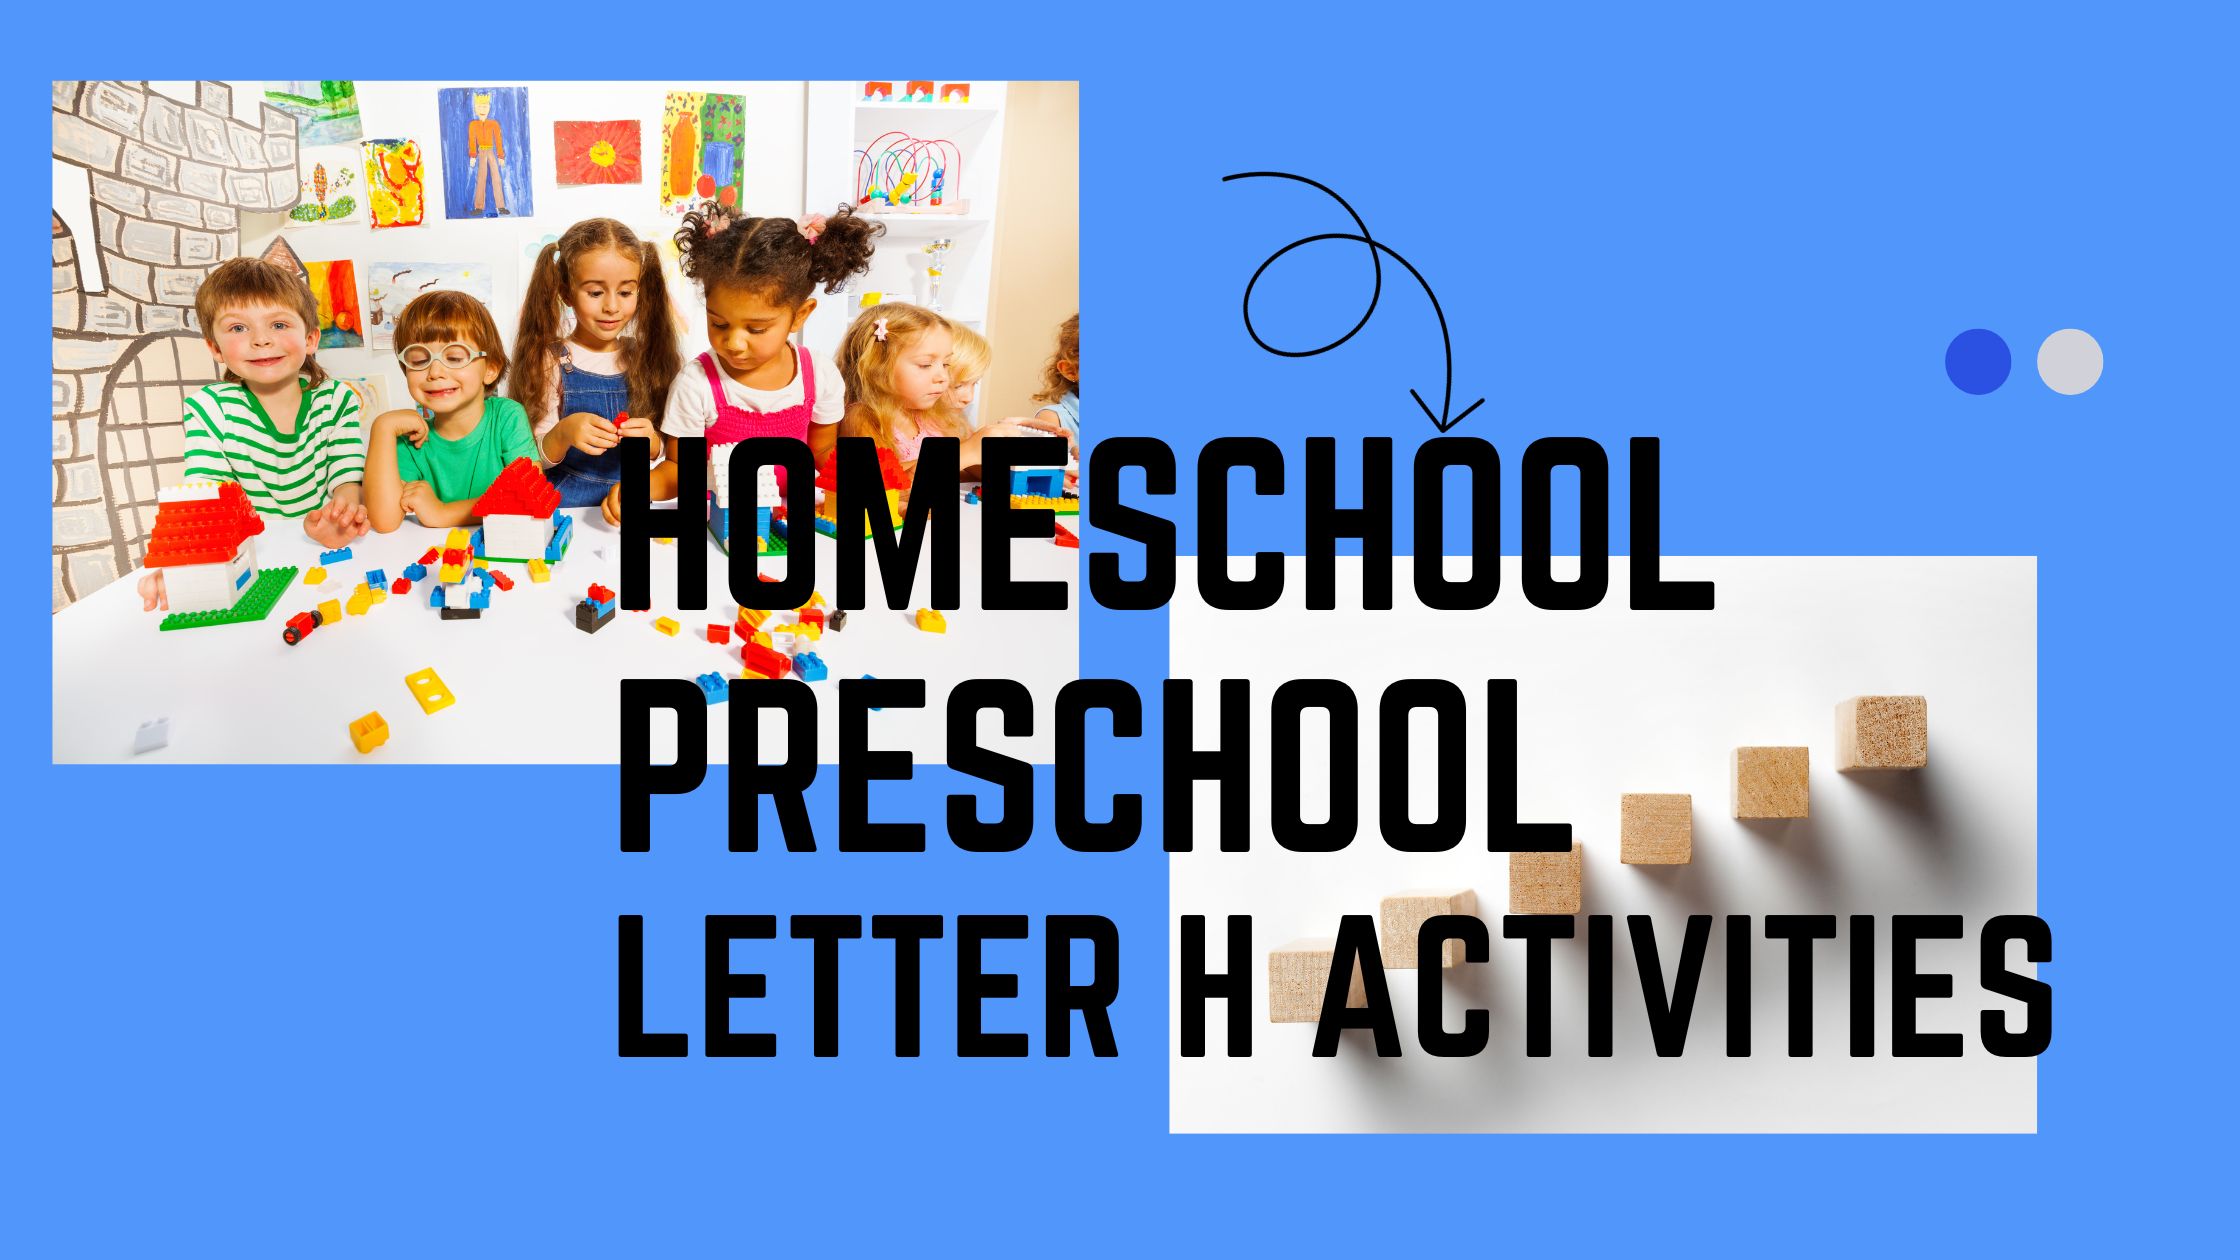 Homeschool Preschool Letter H Activities